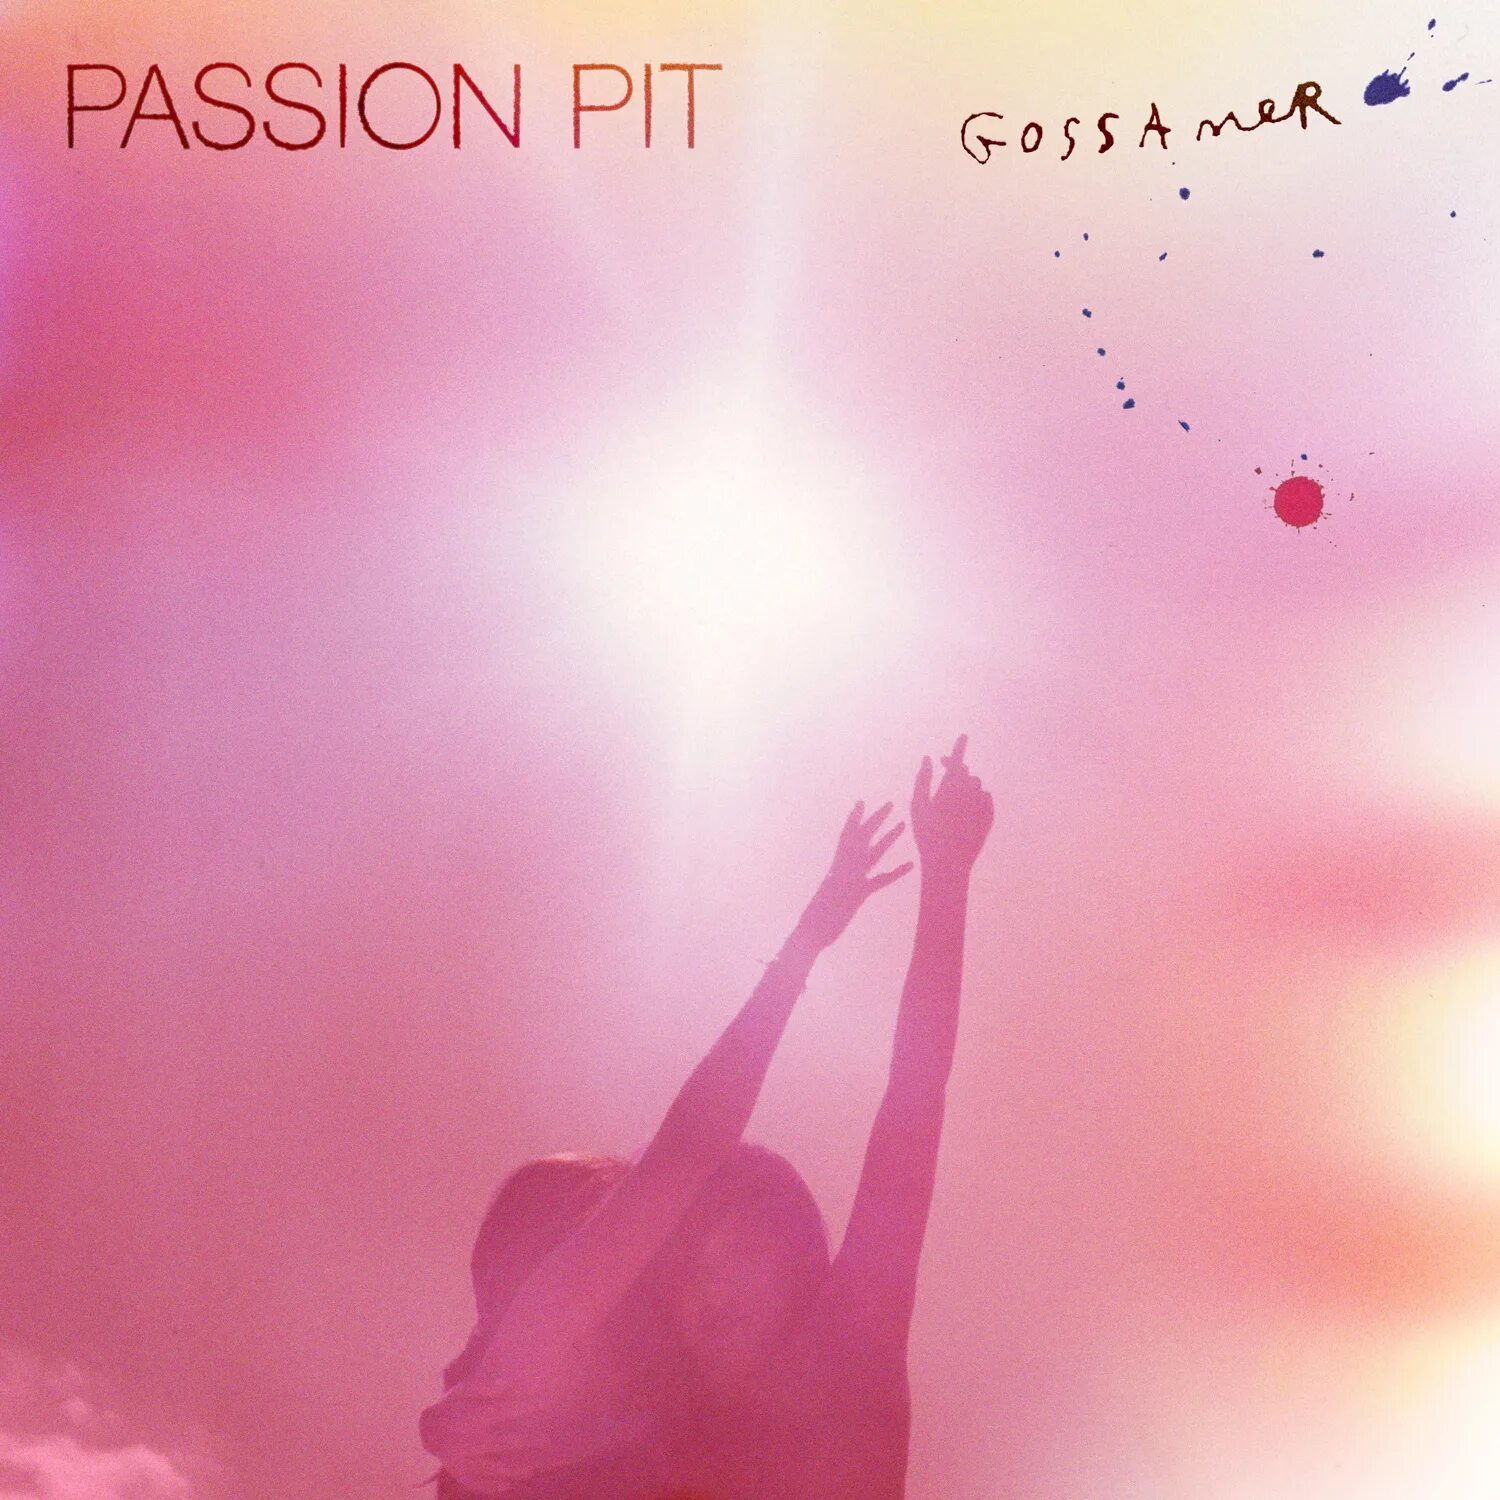 Passion pit. Gossamer melogram. Gossamer певец. Passion Pit "Gossamer (CD)".